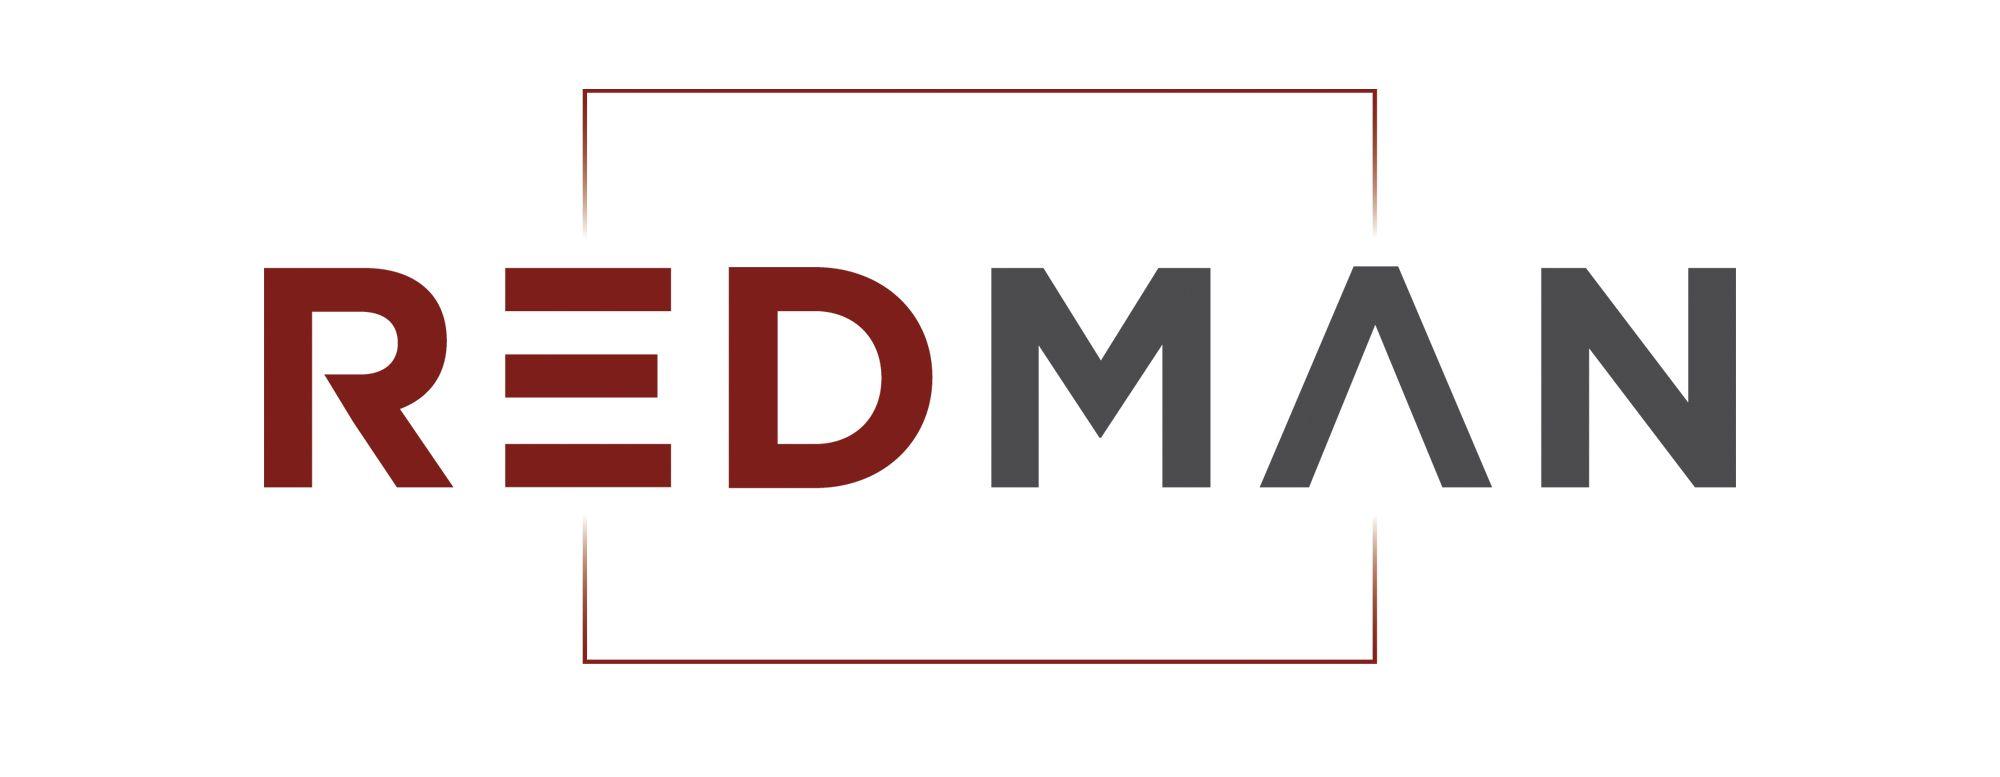 Red Man Logo - REDMAN Les partenaires - Guide l'immobilier Marseille - Club ...